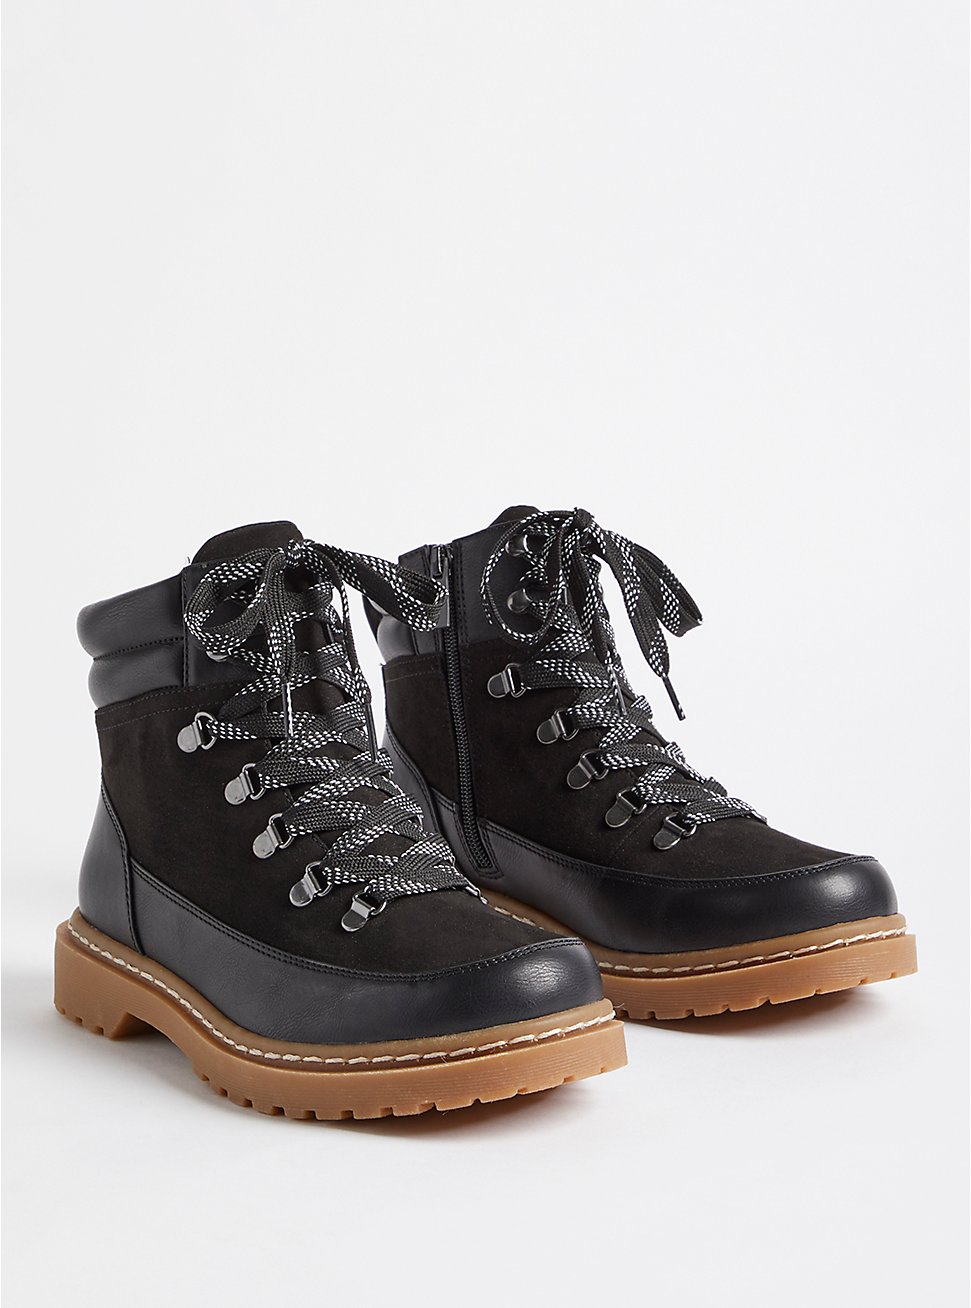 Plus Size Lace-Up Hiker Bootie - Faux Leather Black (WW), BLACK, hi-res